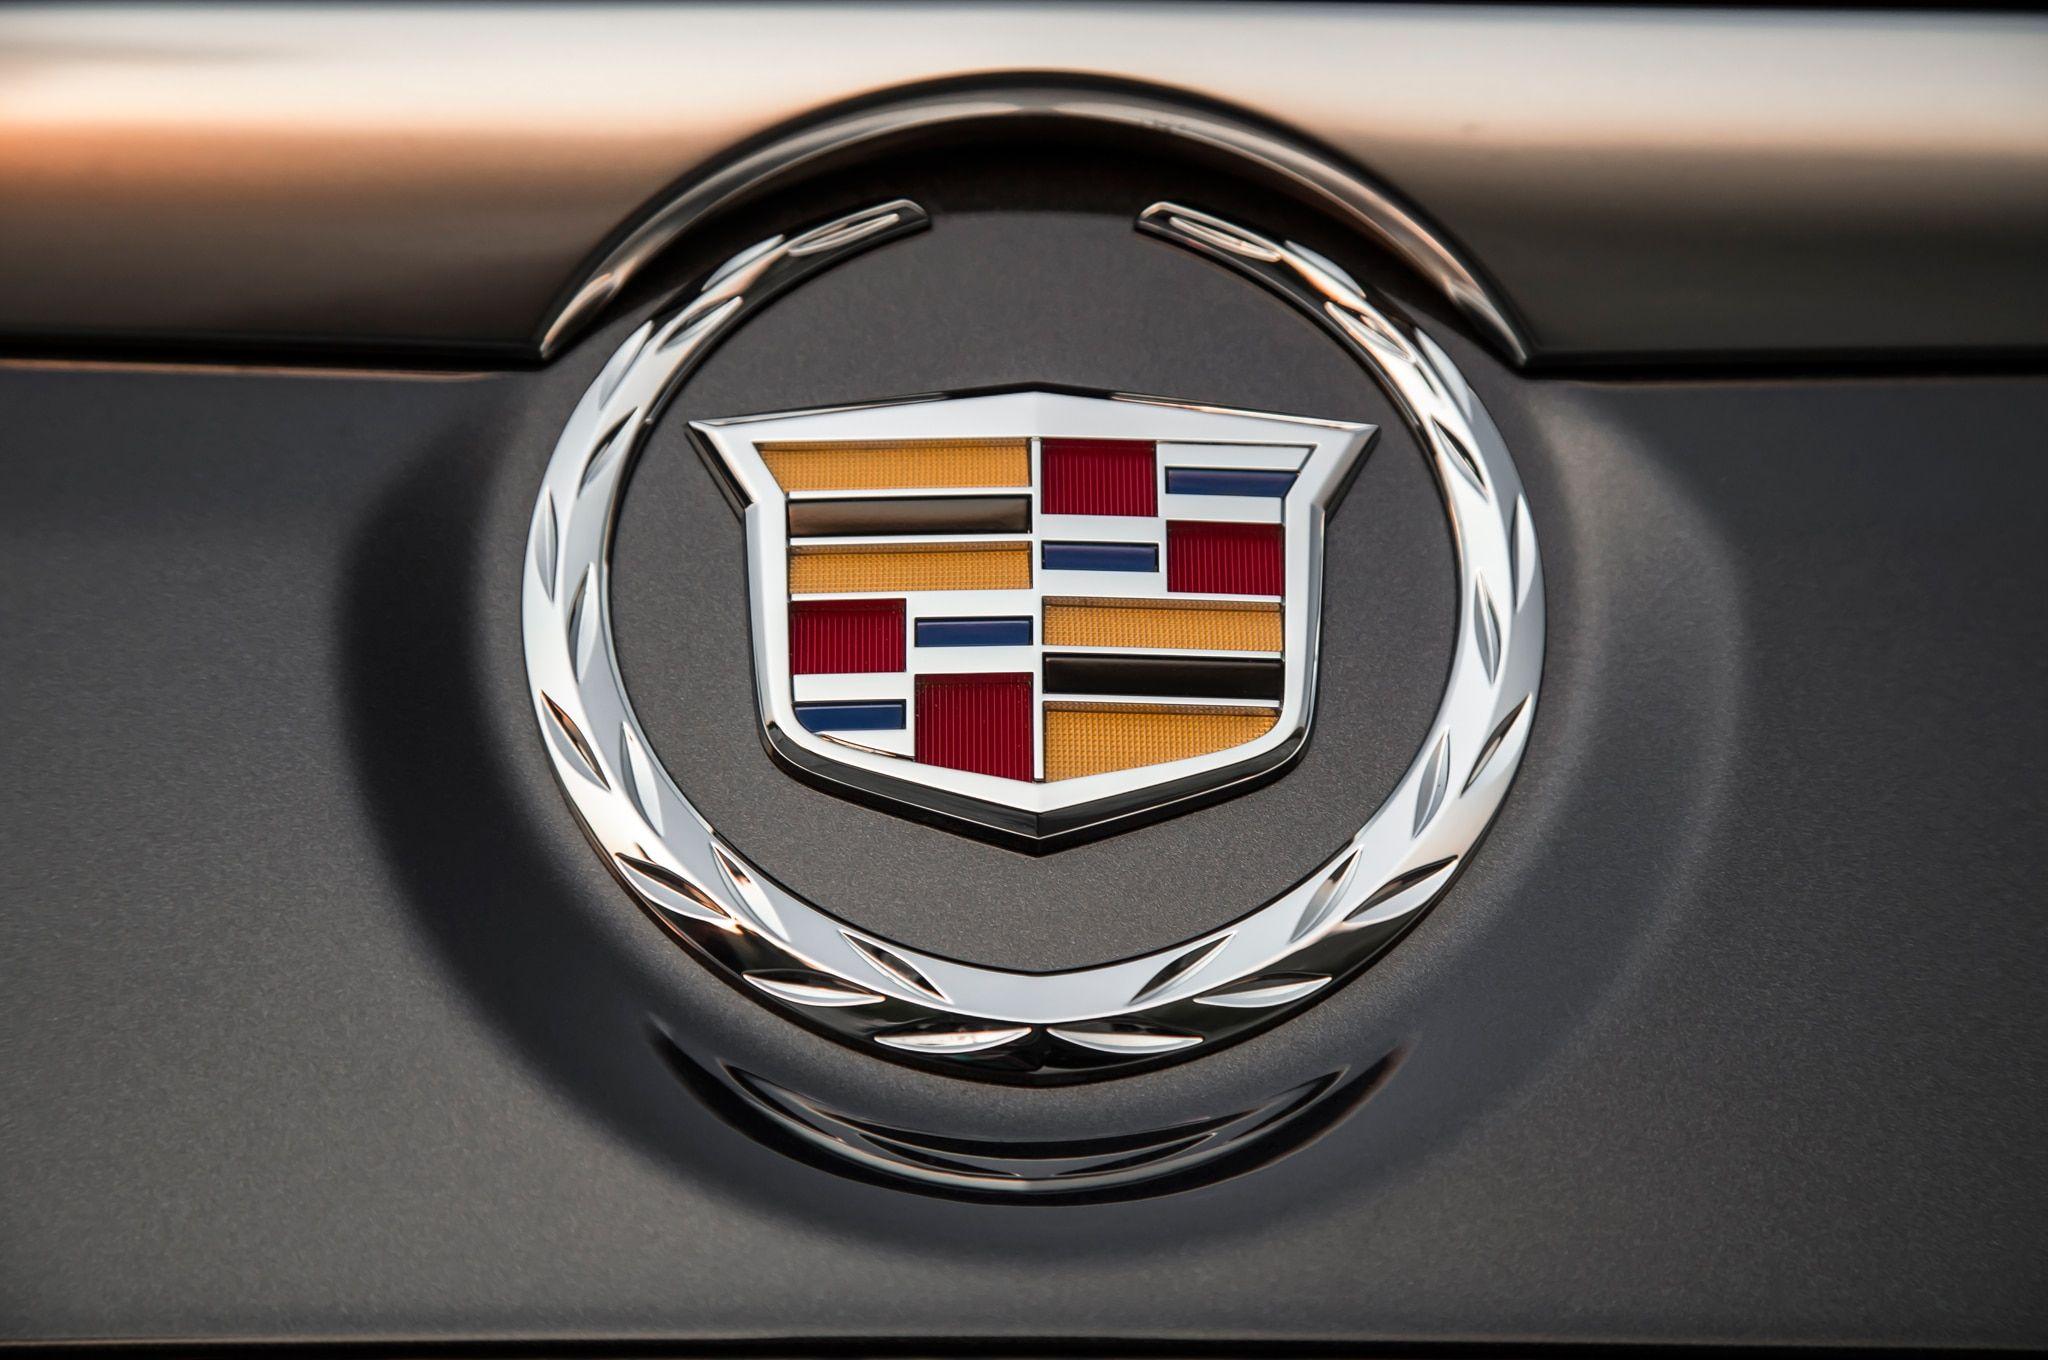 2015 Cadillac New Logo - 2015 Cadillac Escalade ESV First Test - Motor Trend